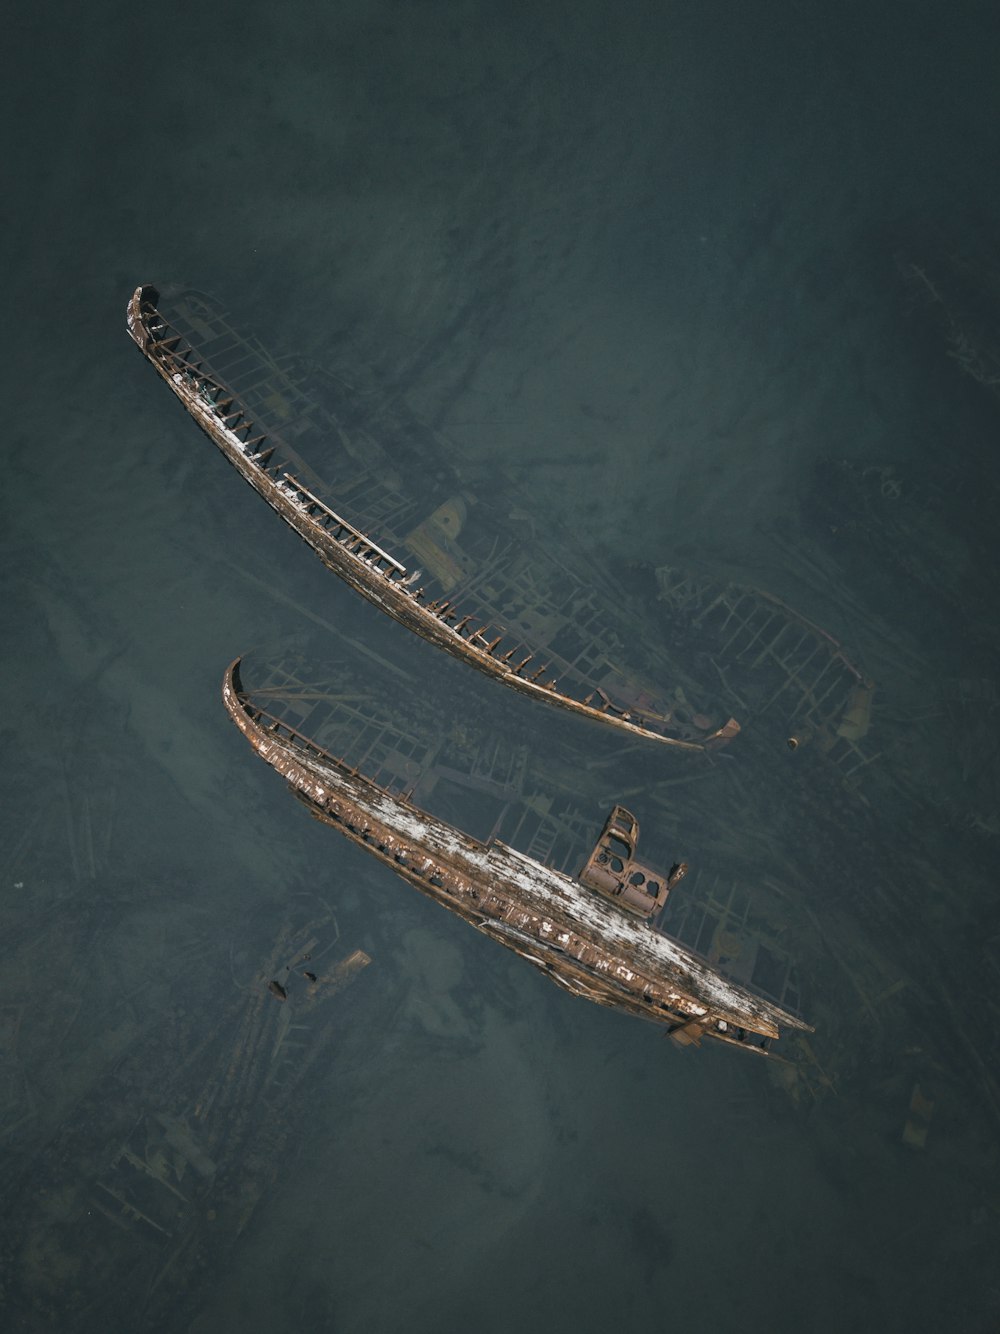 Photographie aérienne de navires coulés